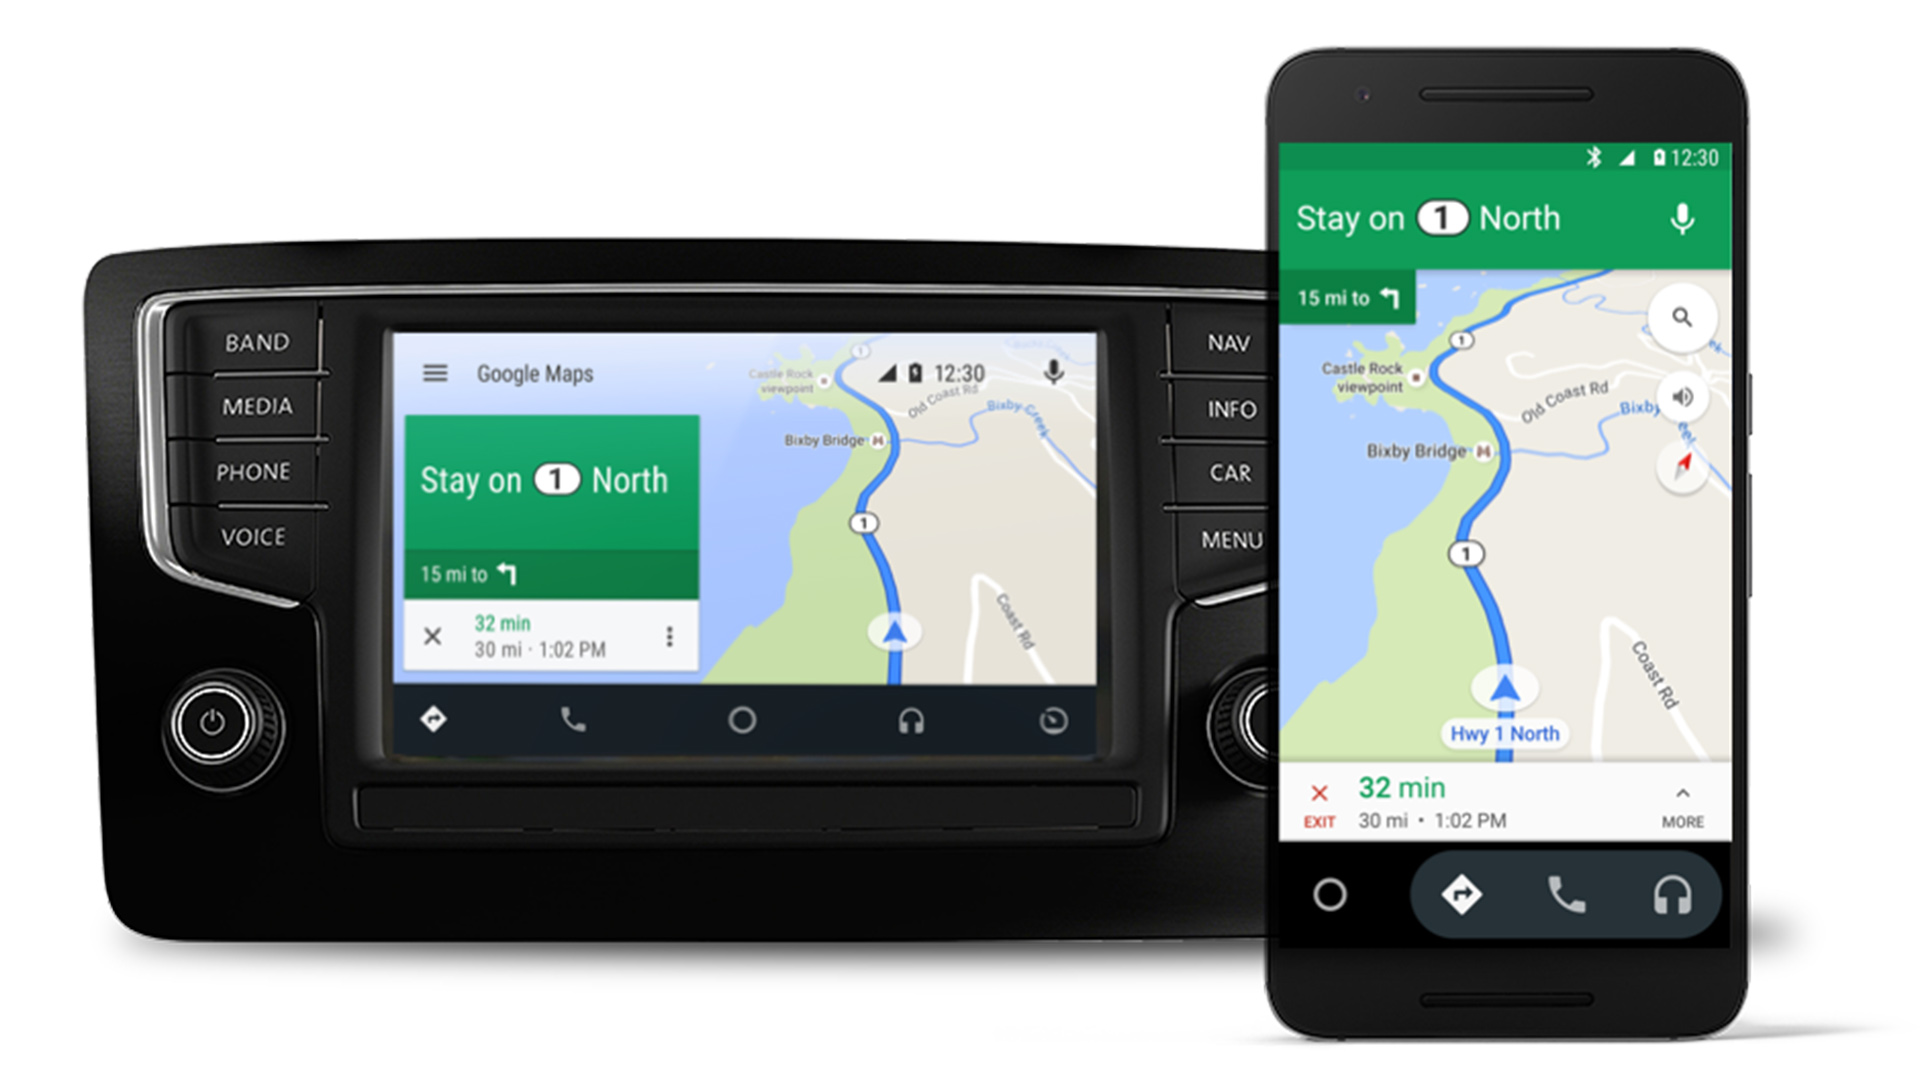 La interfaz Android Auto estuvo disponible tanto para las pantallas de carros como desde los mismos celulares